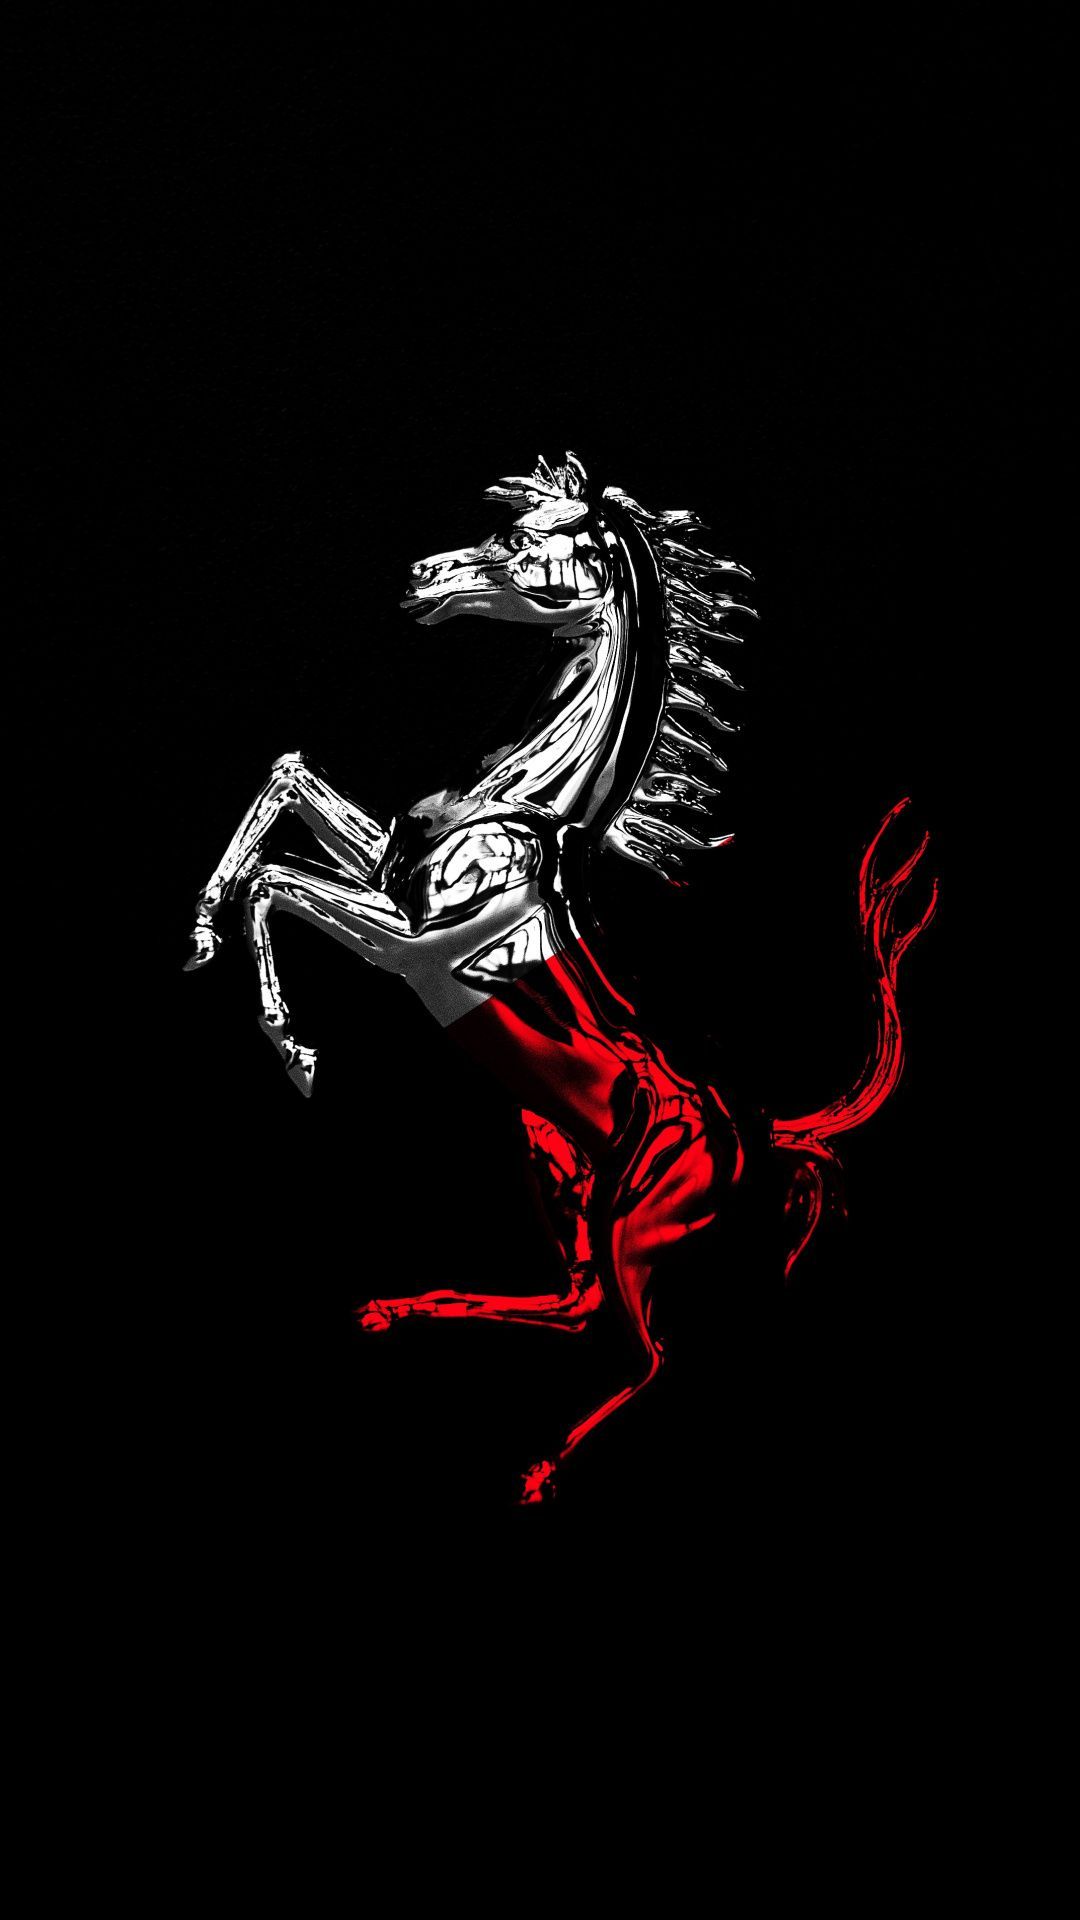 Horse, Ferrari logo, dark, minimal wallpaper. Logo wallpaper hd, Minimal wallpaper, Ferrari logo